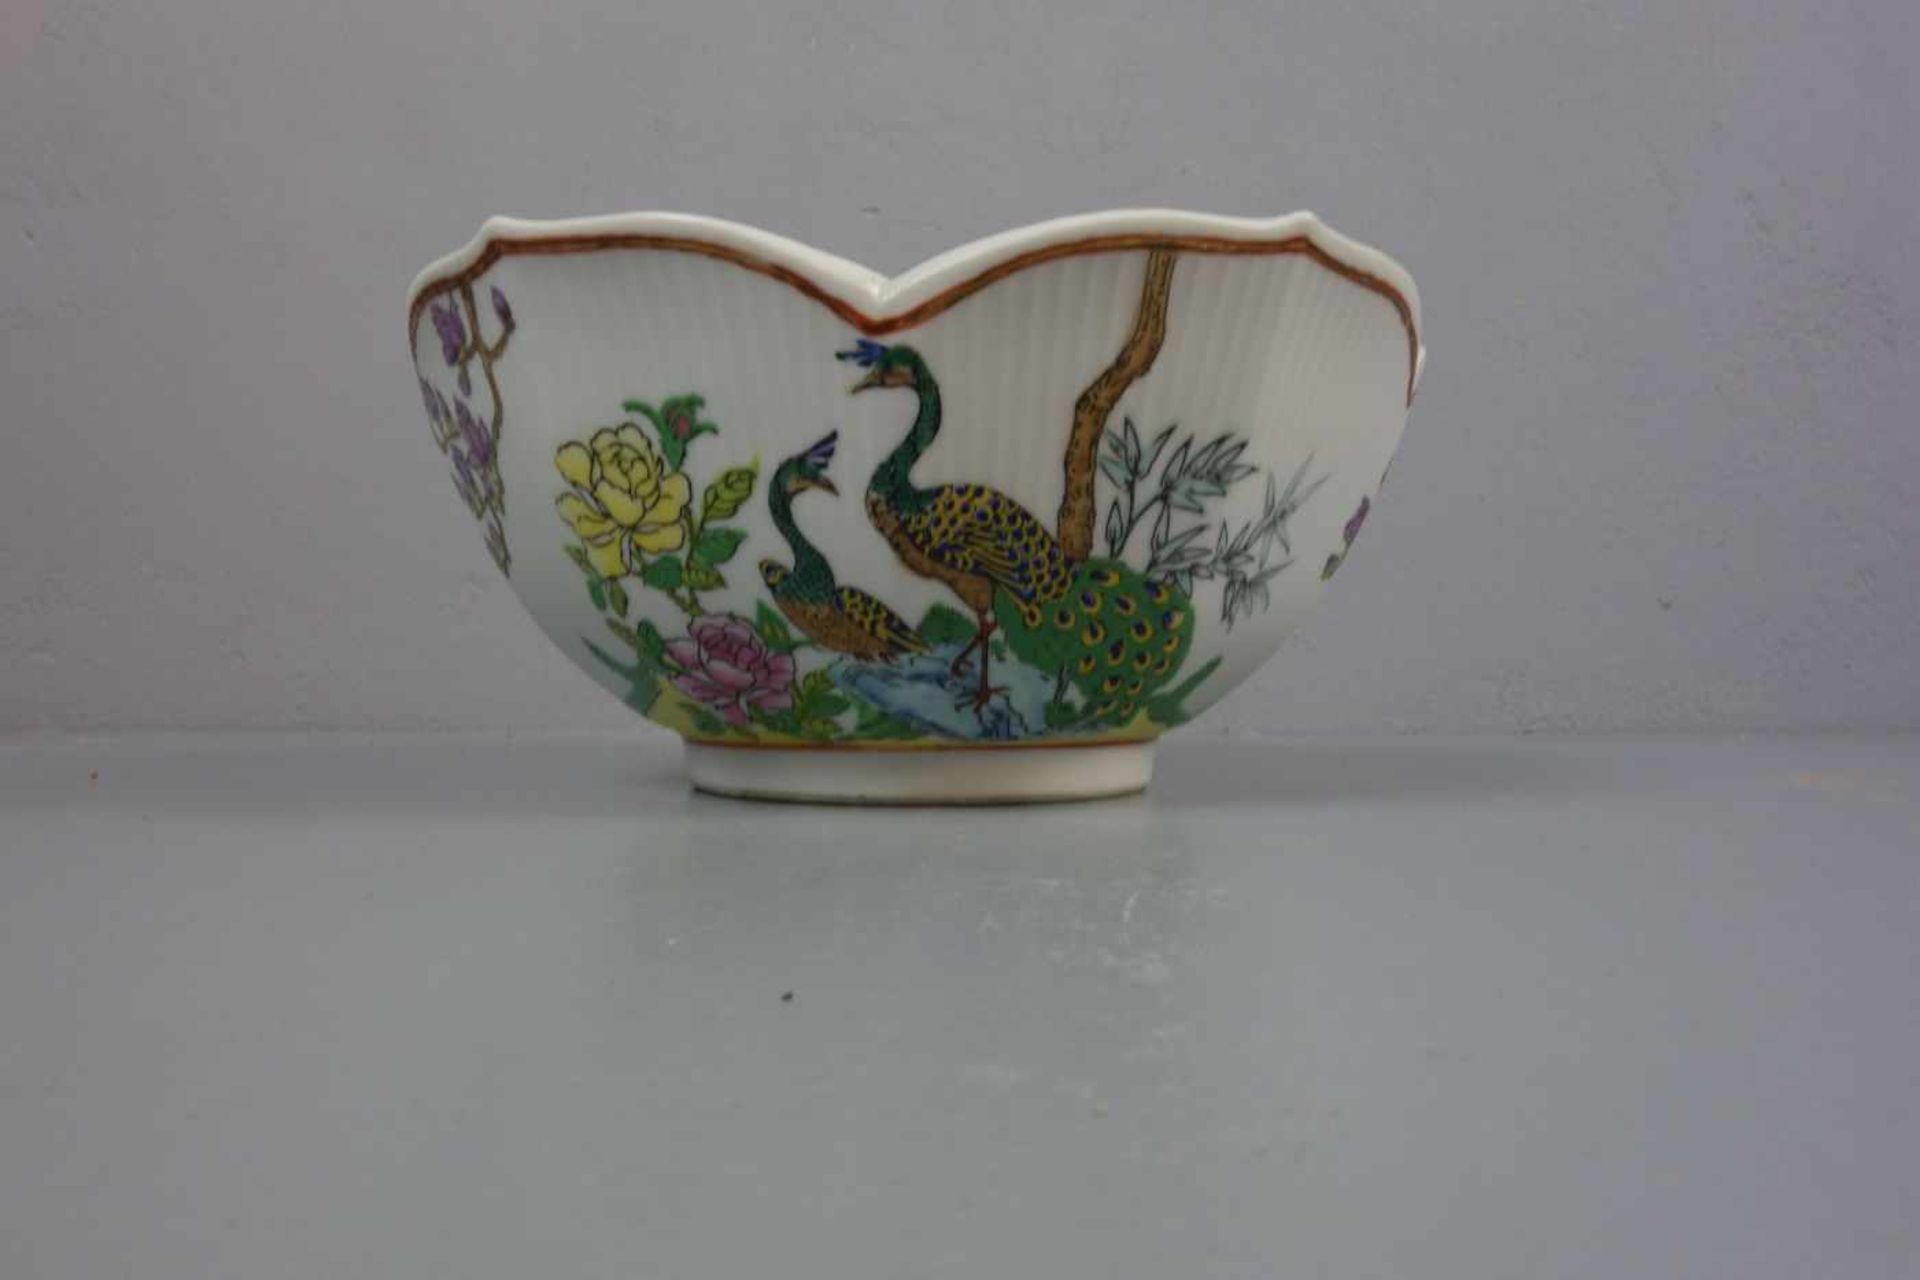 CHINESISCHE SCHALE / bowl, Porzellan, unter dem Stand aufglasurrot gemarkt mit Vasenmotiv, flankiert - Bild 4 aus 4